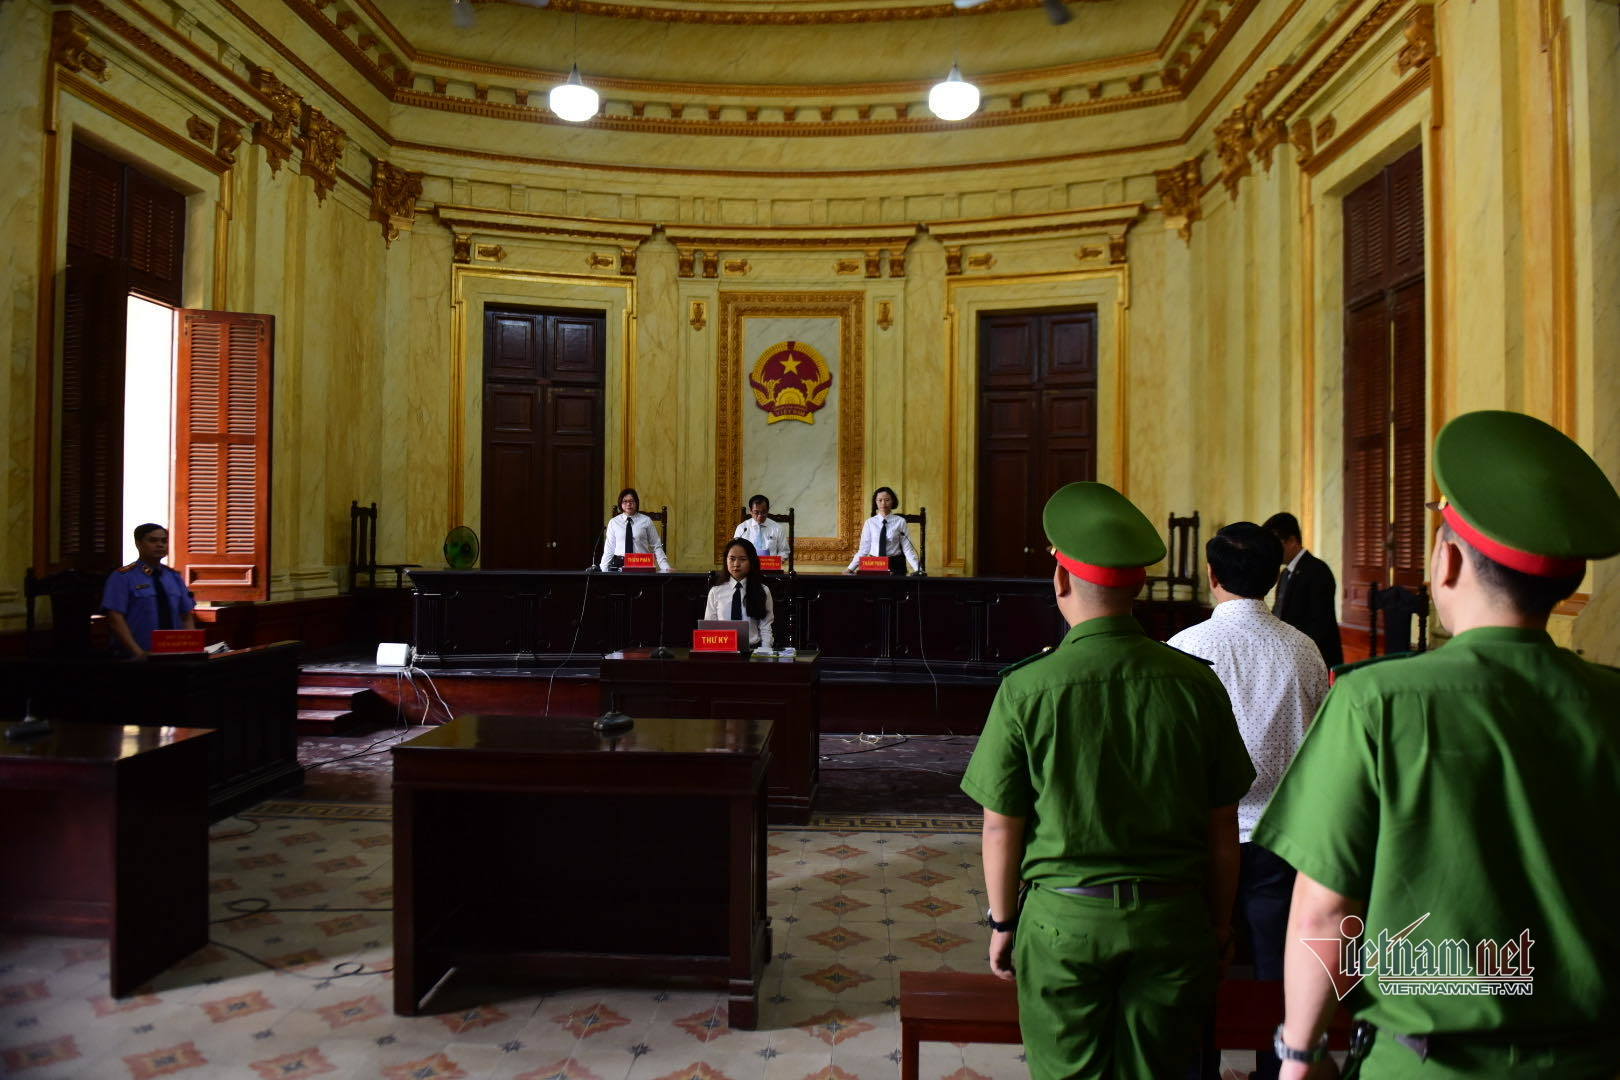 Bị y án 18 tháng tù, Nguyễn Hữu Linh mất bình tĩnh